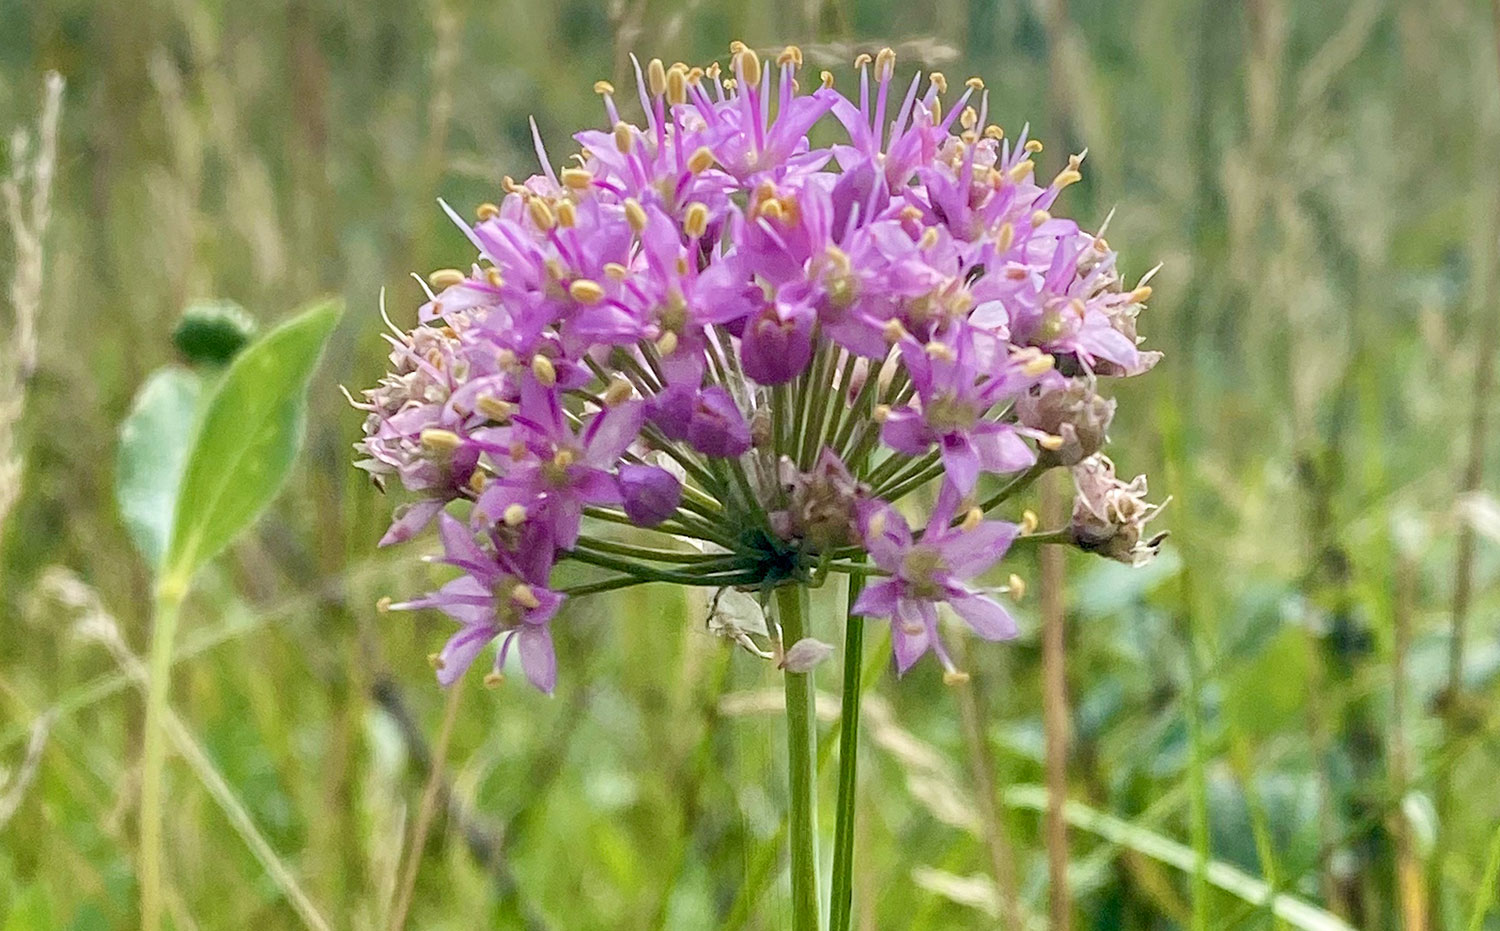 Wild onion flower